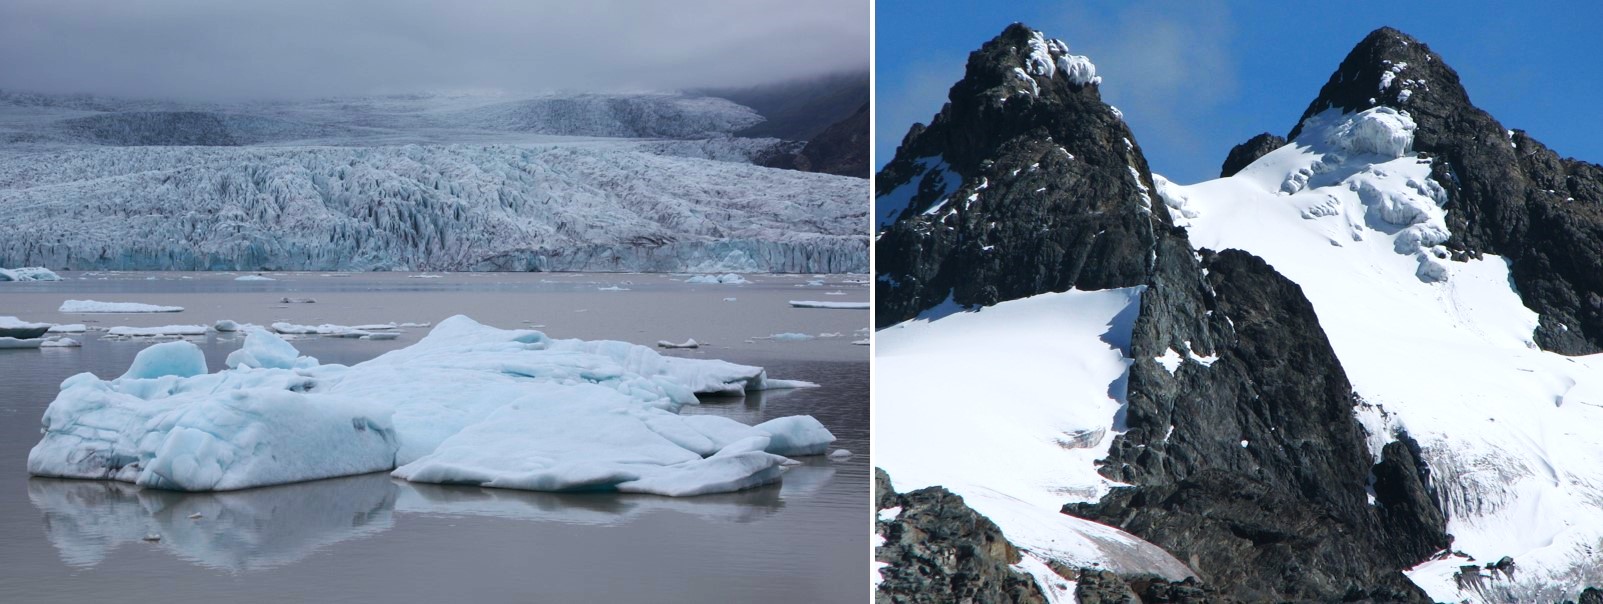 Figura 4. A la izquierda, laguna glaciar Breiðárlón en el extremo sur del glaciar Vatnajökull (Islandia), a unos 64º de latitud norte y prácticamente al nivel del mar. Y a la derecha, glaciar en la cumbres de las Montañas Rwenzori (Uganda), a unos 5.000 m de altitud y prácticamente en la línea del ecuador (0º 23´ latitud norte). Fotografías de Gabriel Castilla y WWF respectivamente.